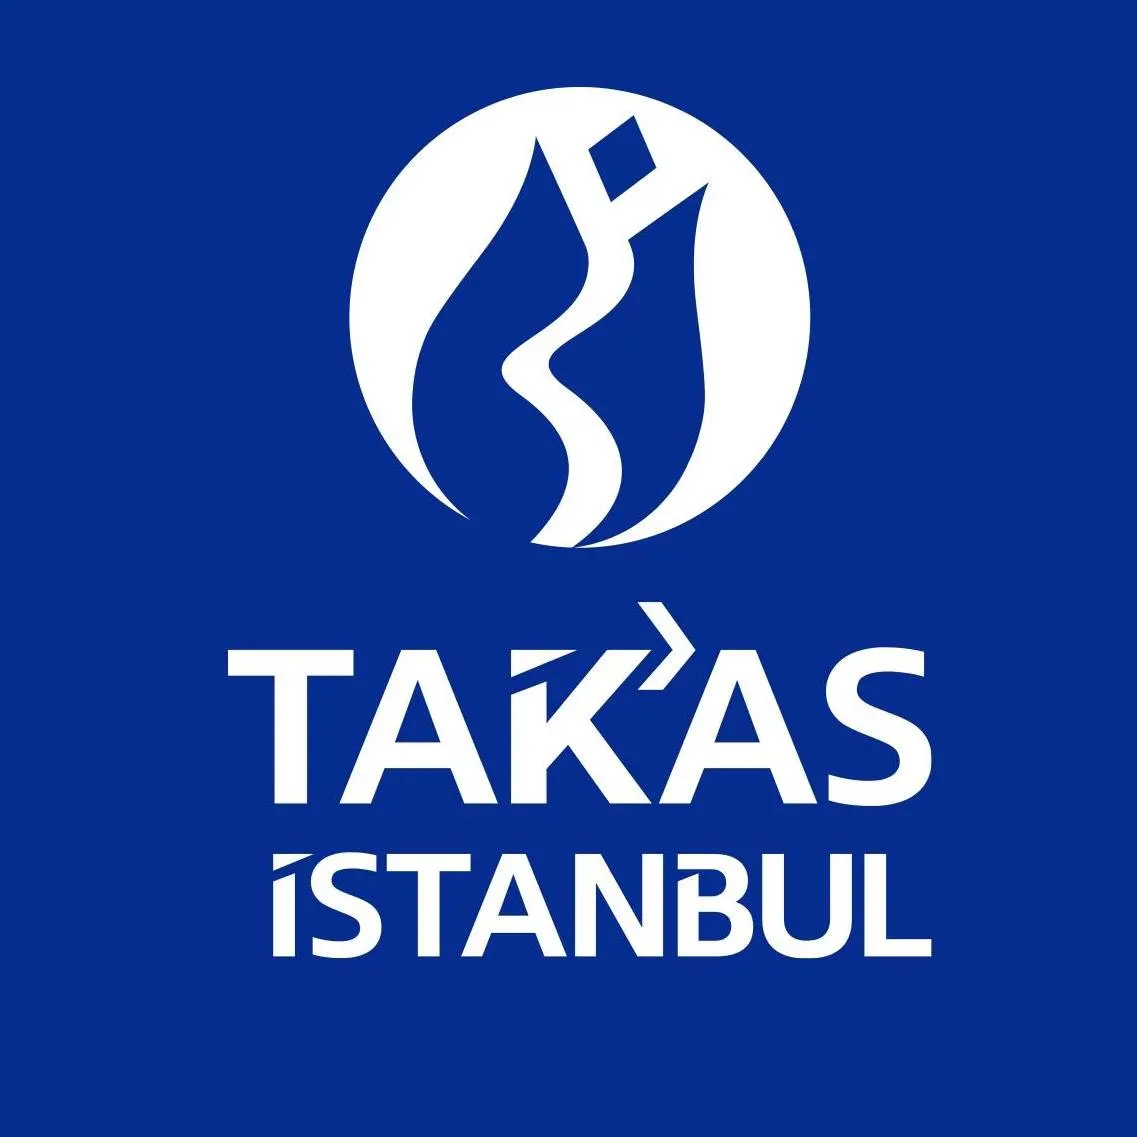 İstanbul Takas ve Saklama Bankası A.Ş.